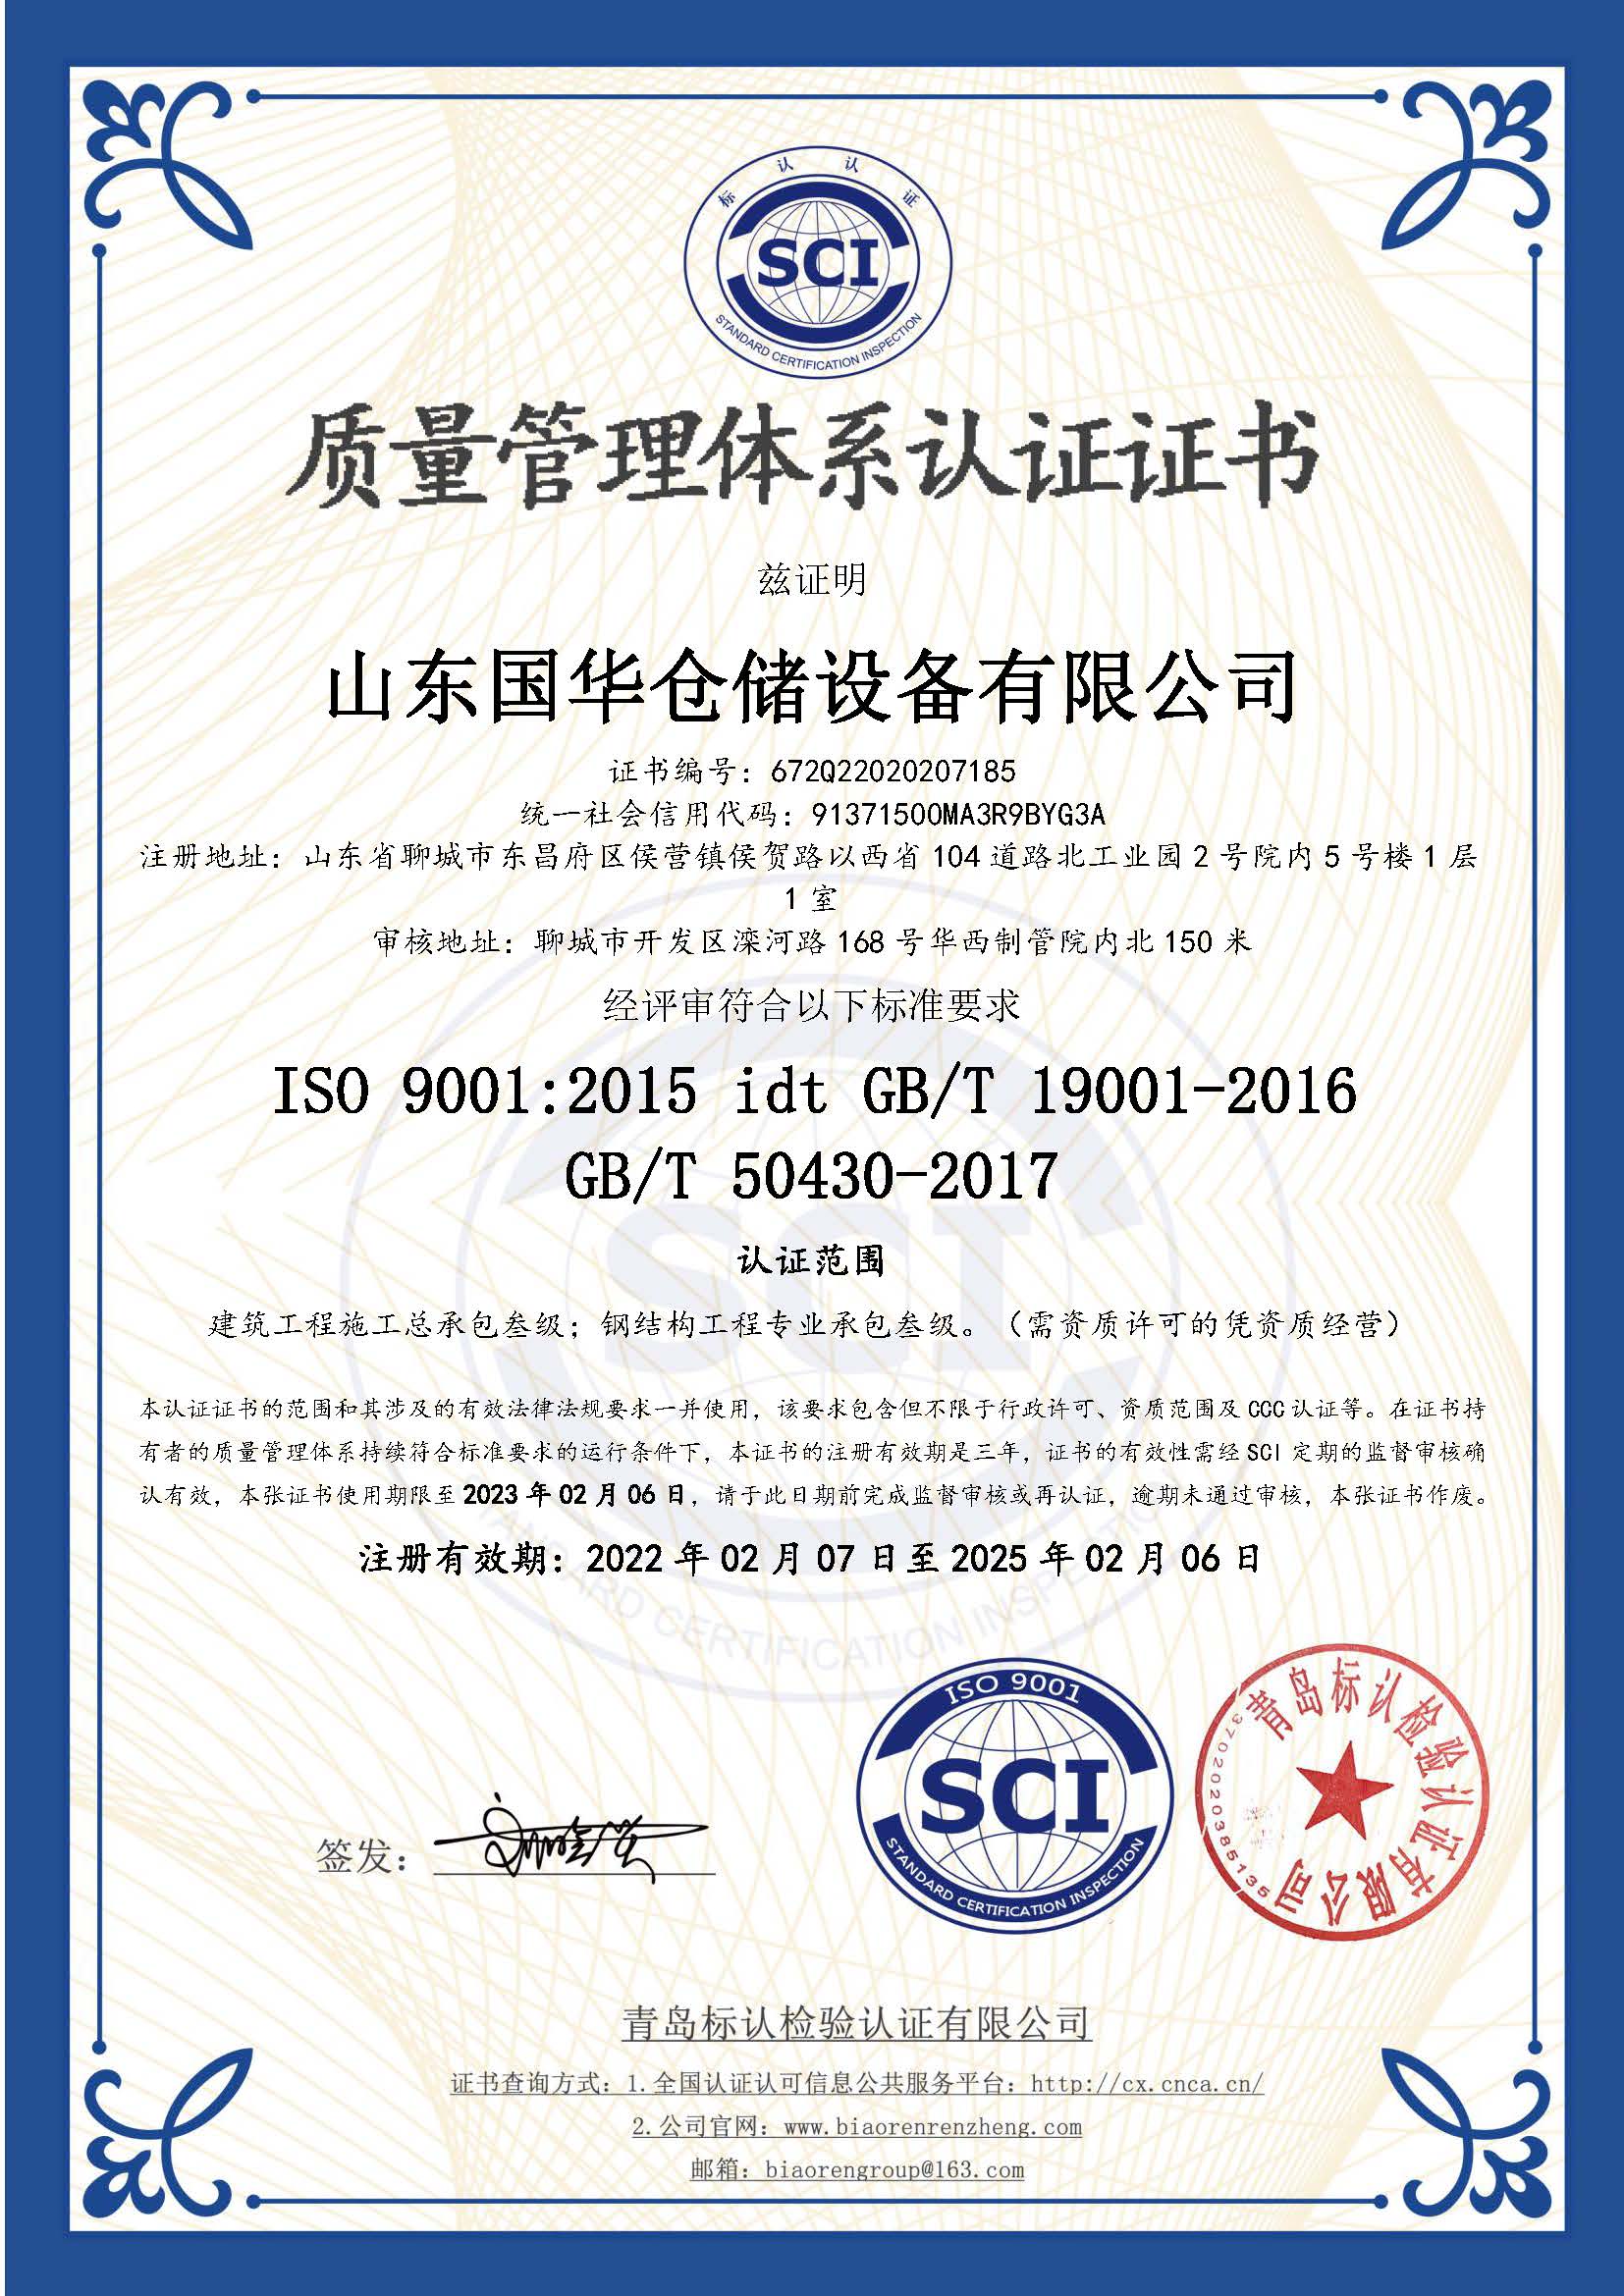 锡林郭勒钢板仓ISO质量体系认证证书